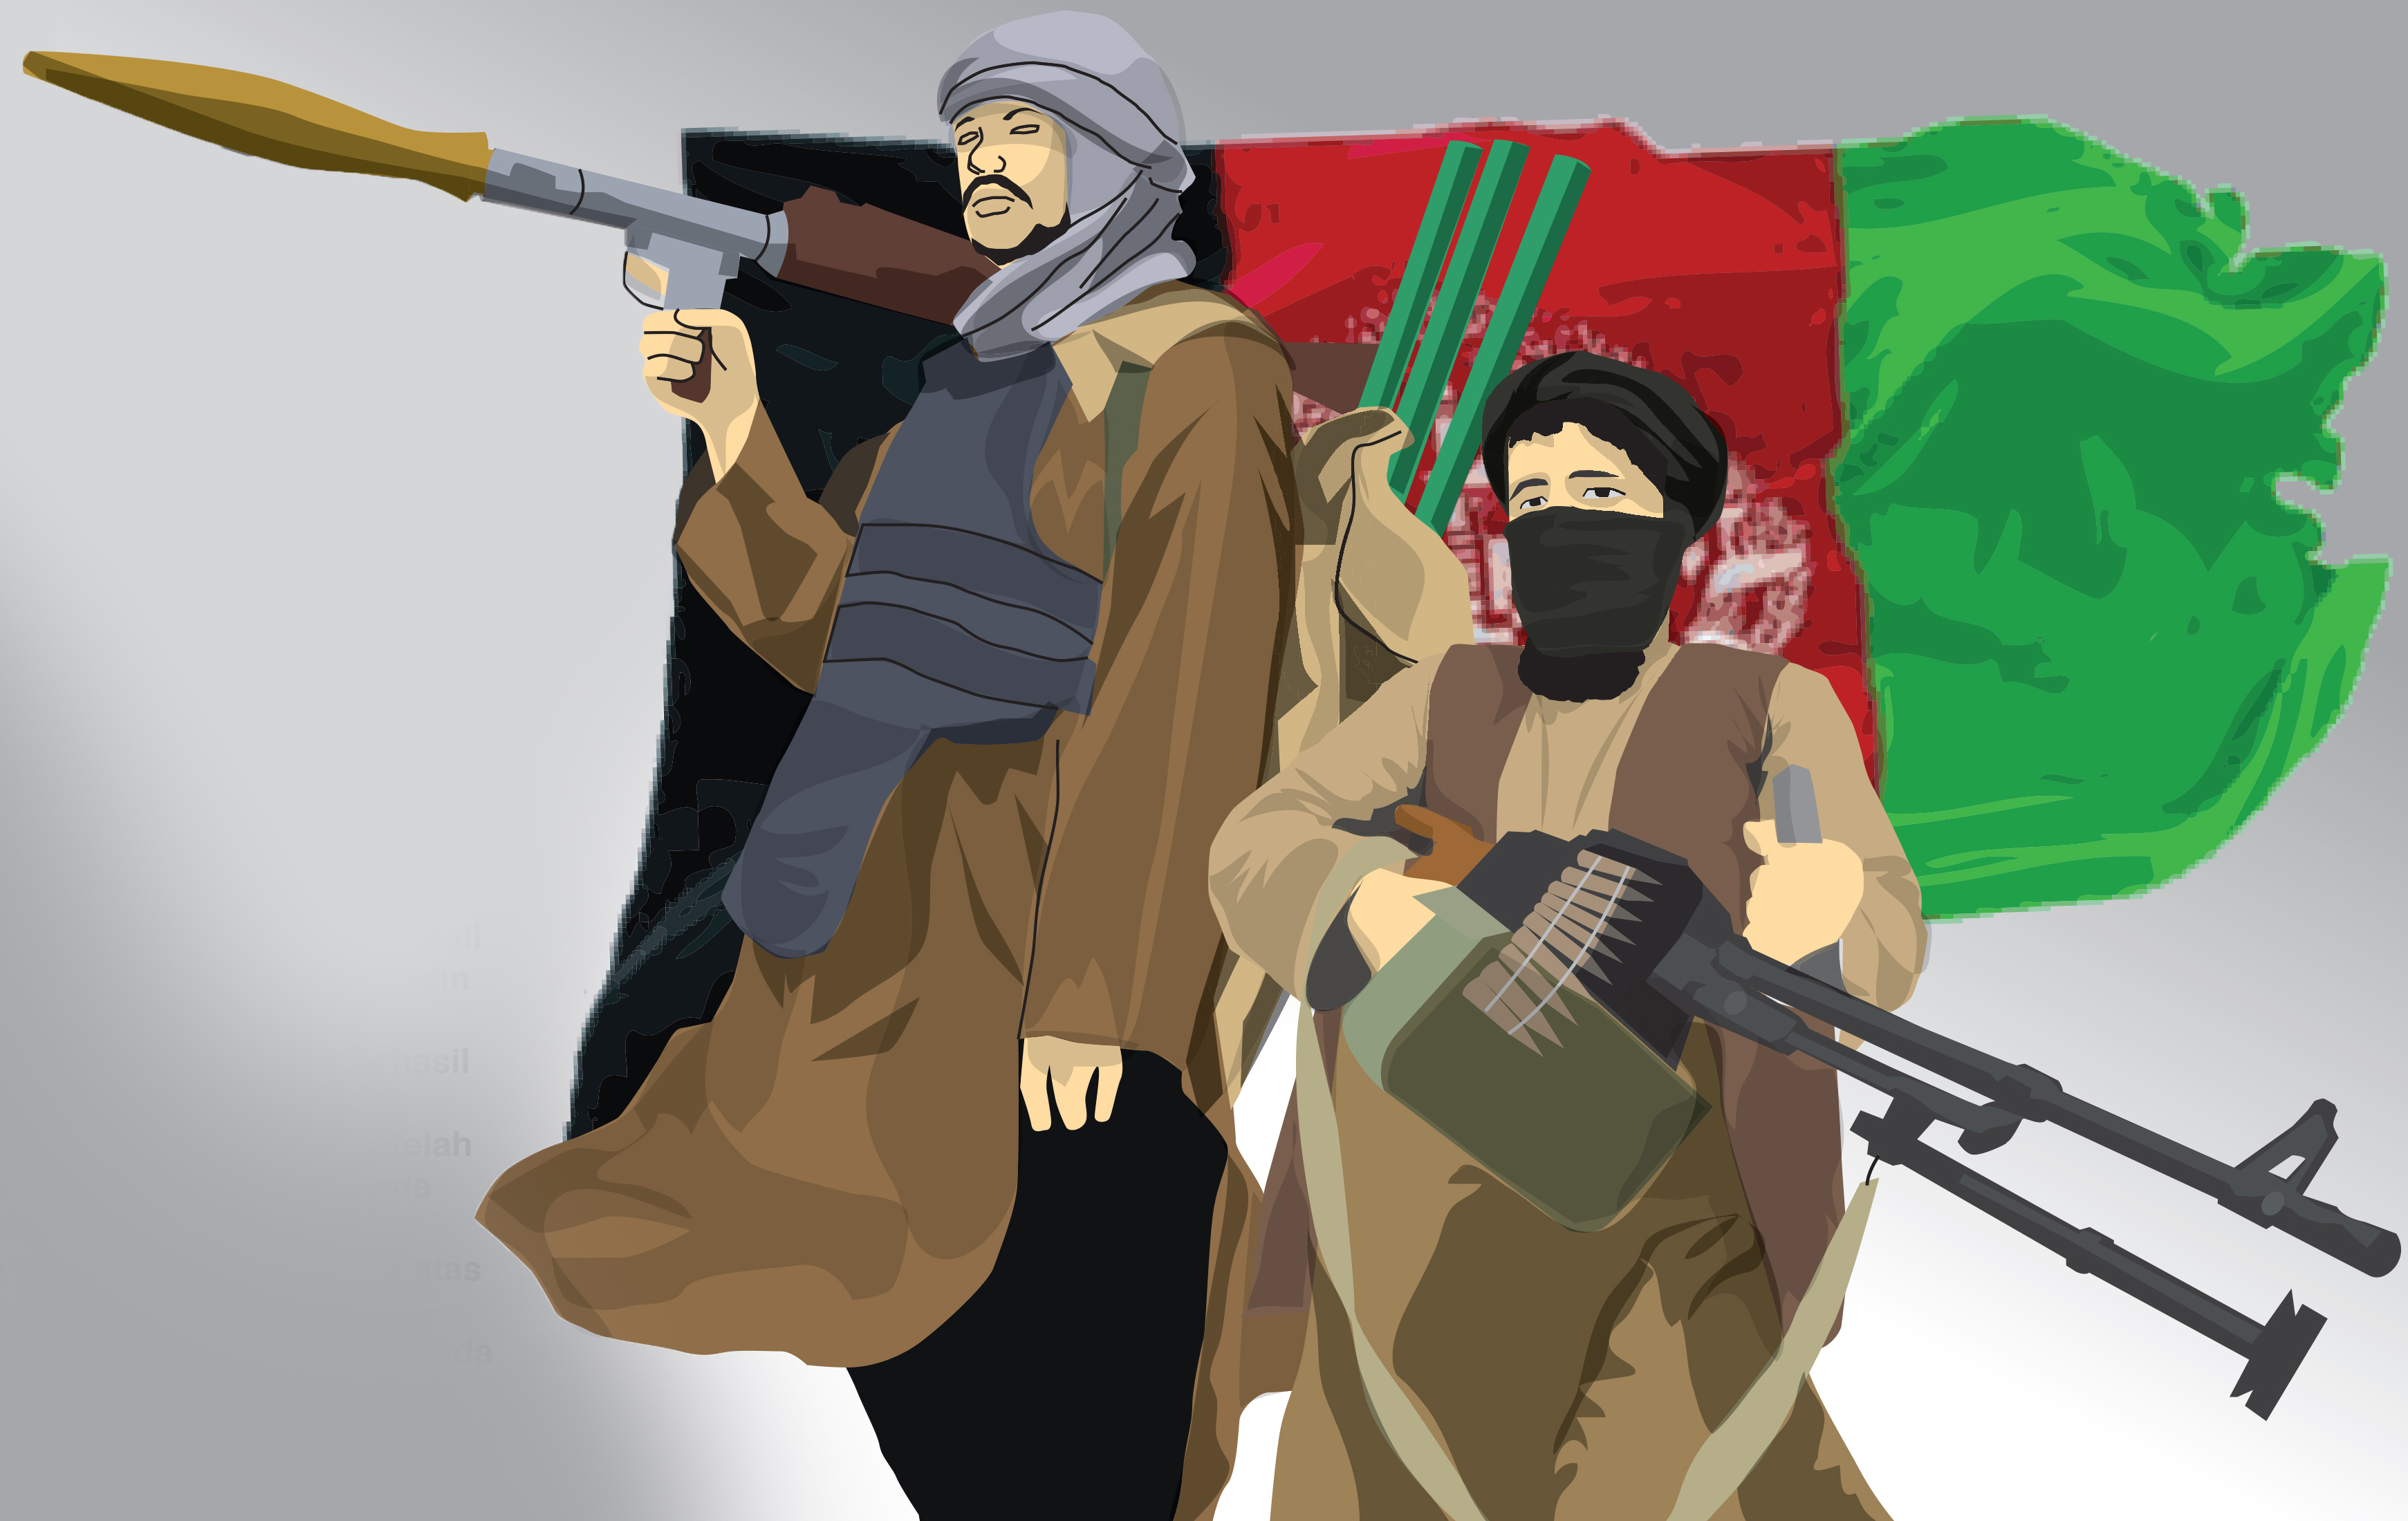 Таджики подставные террористы